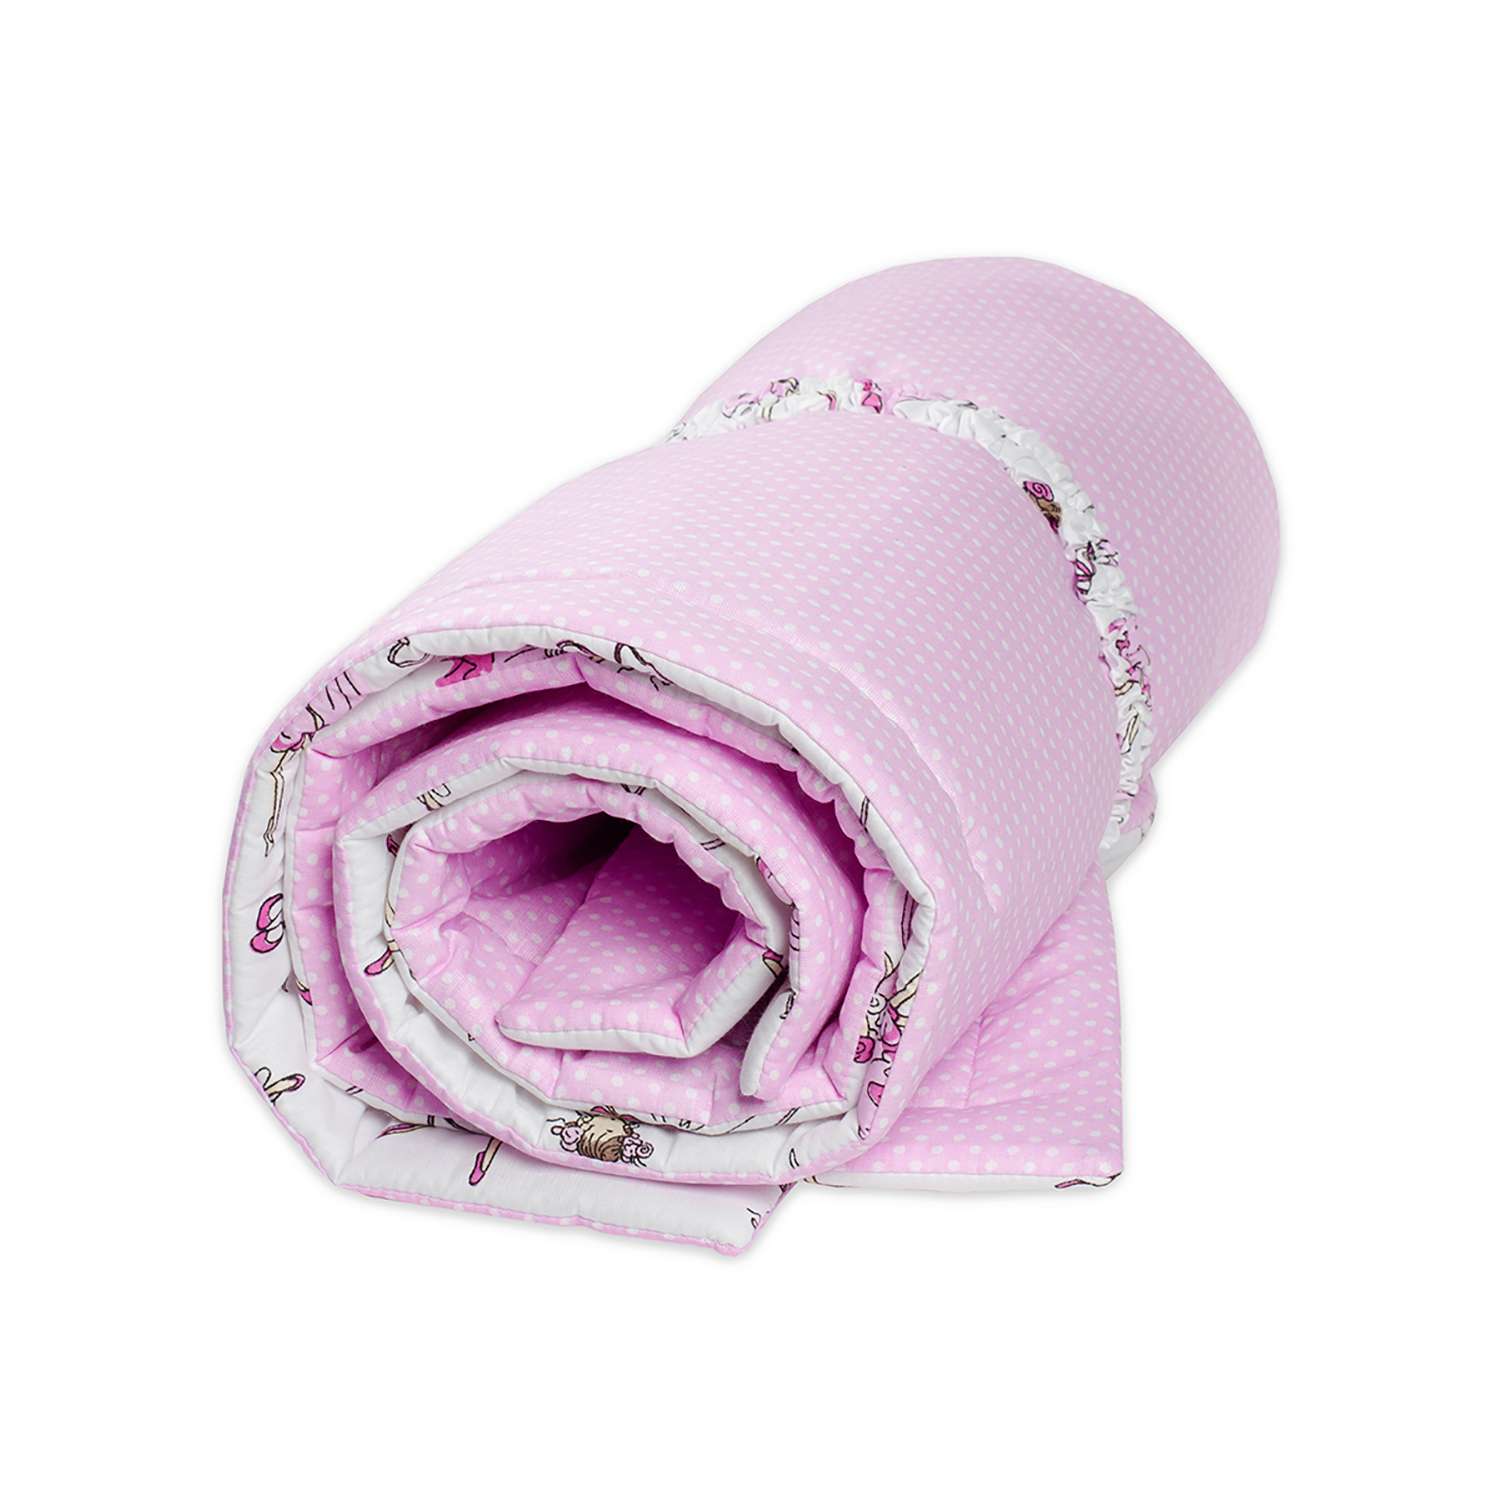 Конверт-одеяло Чудо-чадо для новорожденного на выписку Нелето балерины/розовый - фото 5